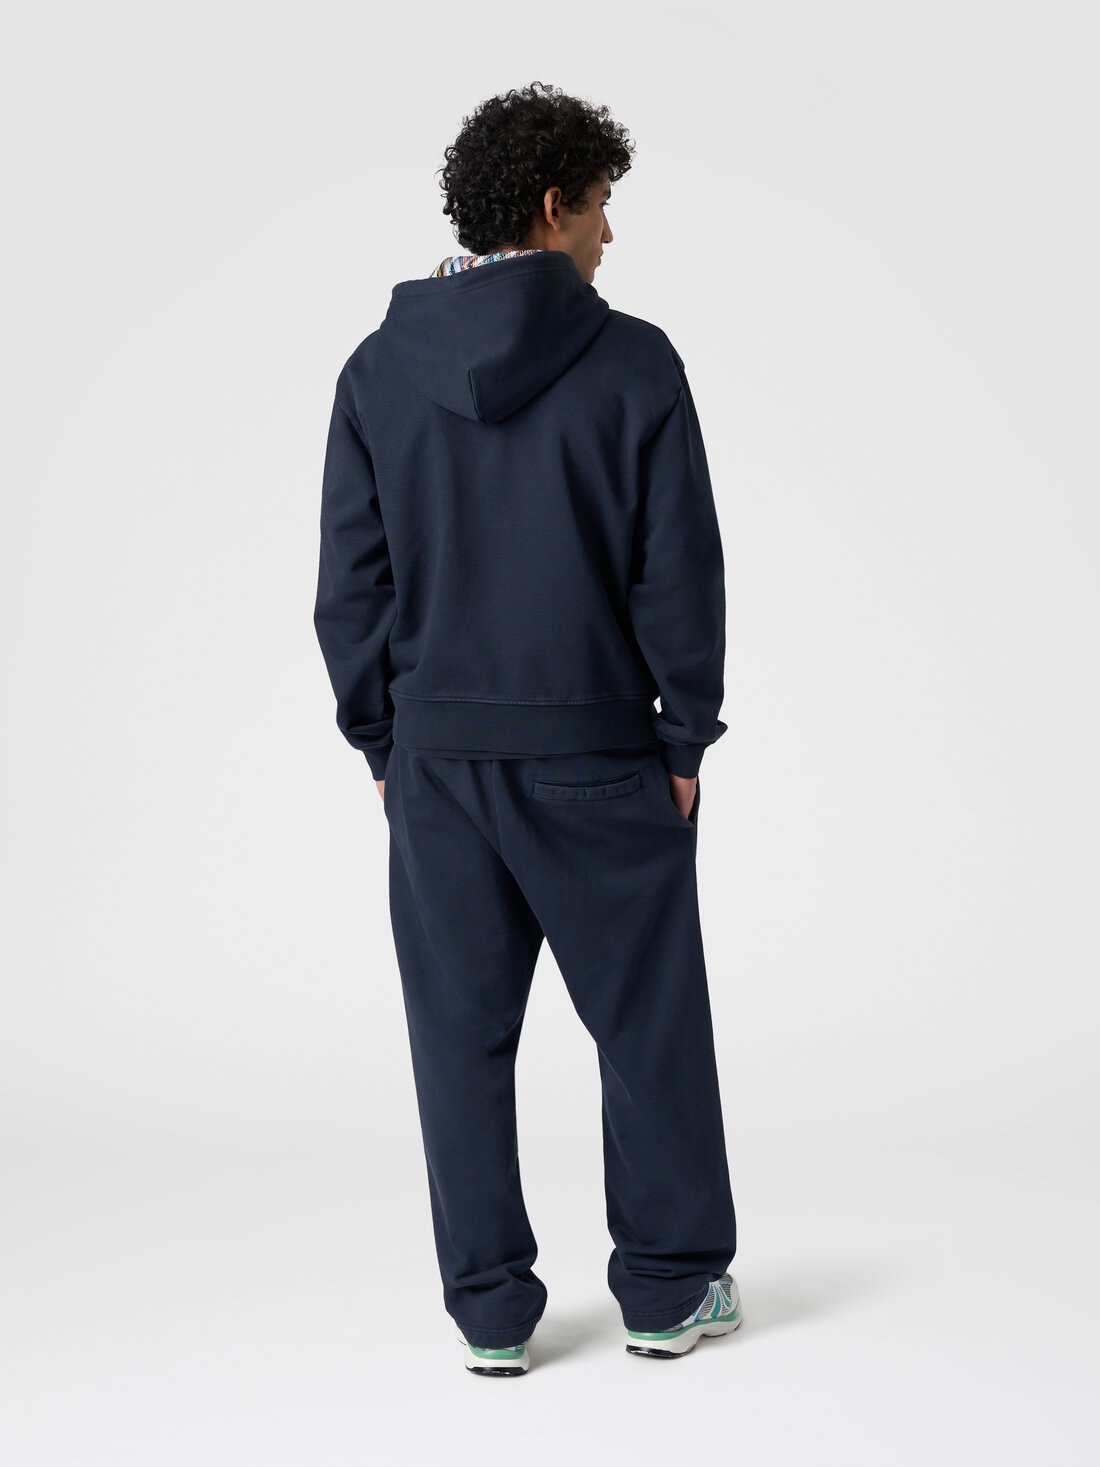 Cardigan in felpa di cotone con cappuccio foderato in maglia, Blu Navy  - TS24SW00BJ00H0S72EU - 2